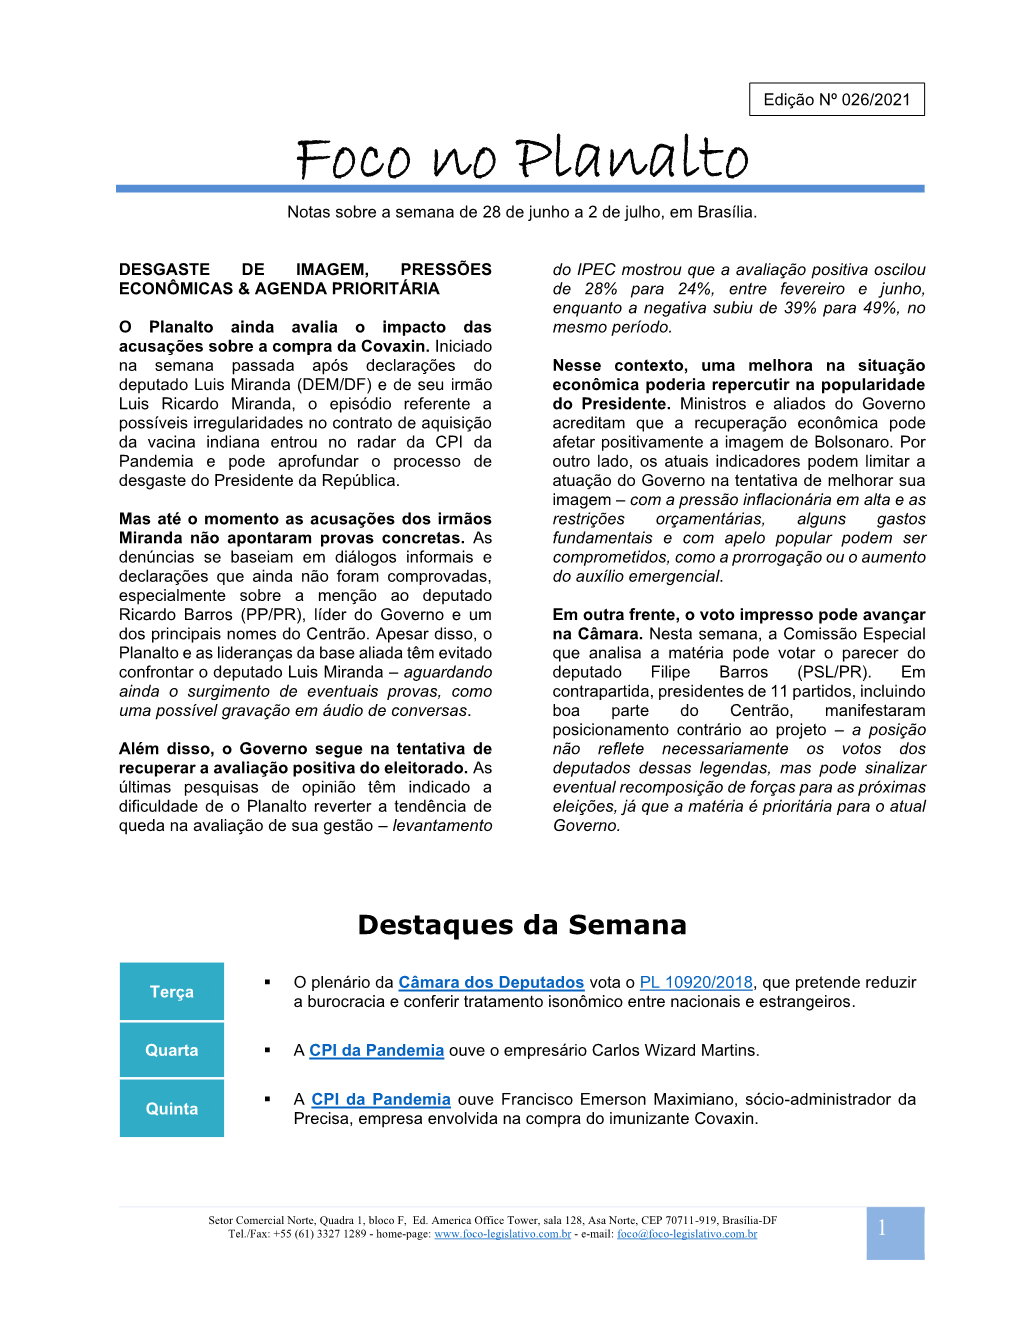 Foco No Planalto – Edi N 026 2021